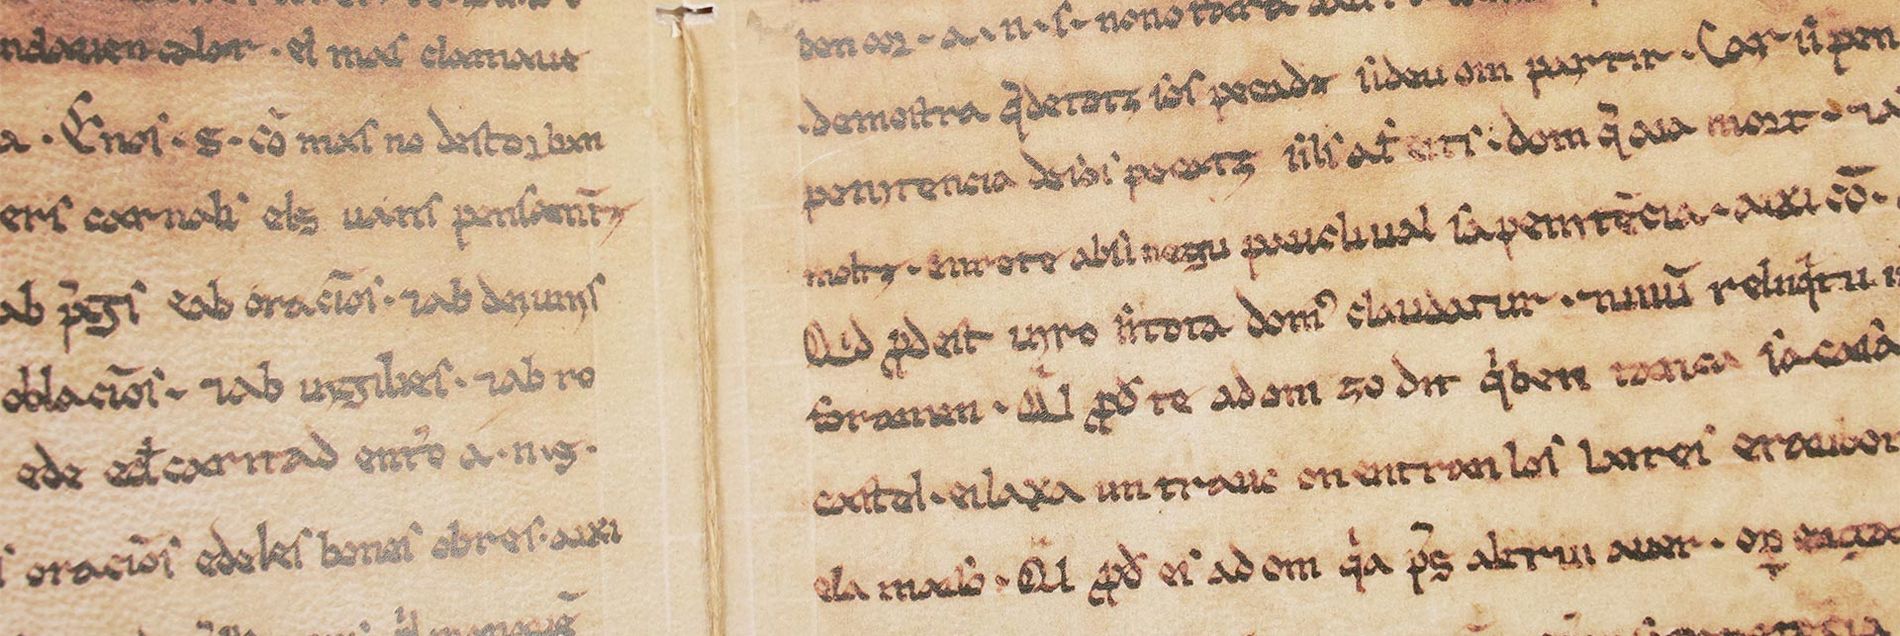 <i>“Die ältesten erhaltenen religiösen Texte in katalanischer Sprache”</i>